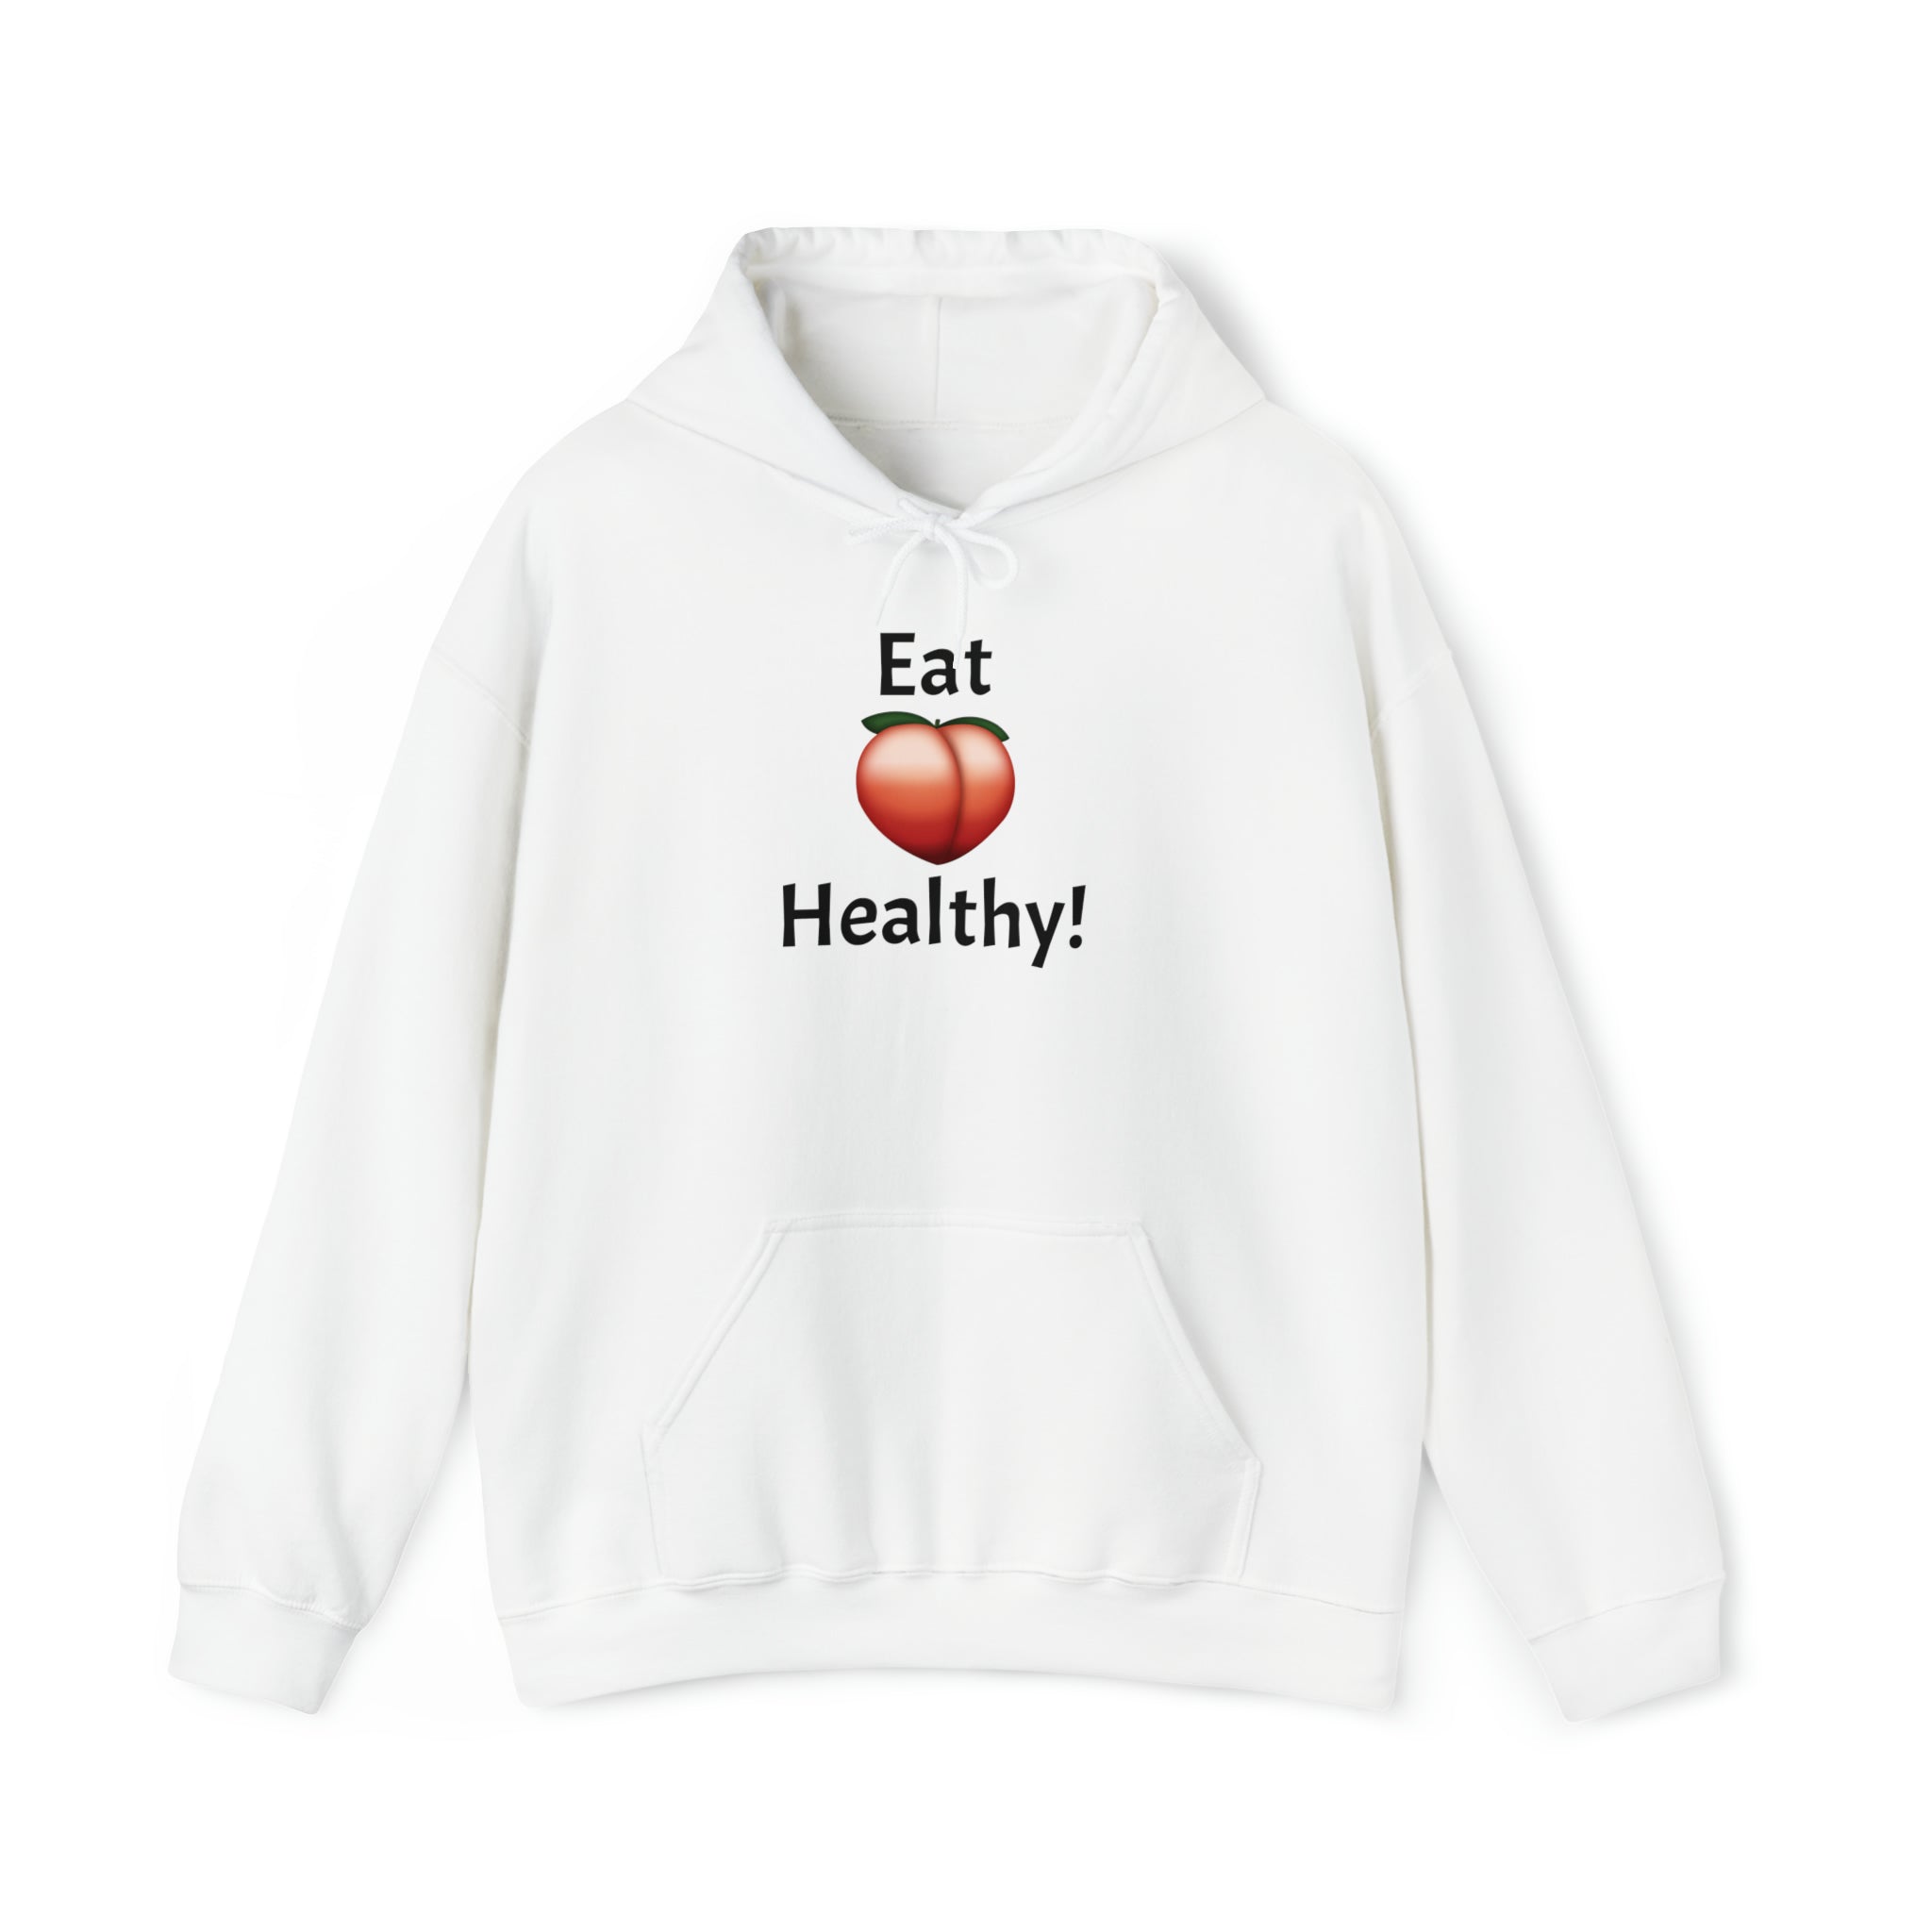 Eat Healthy! (Peach)